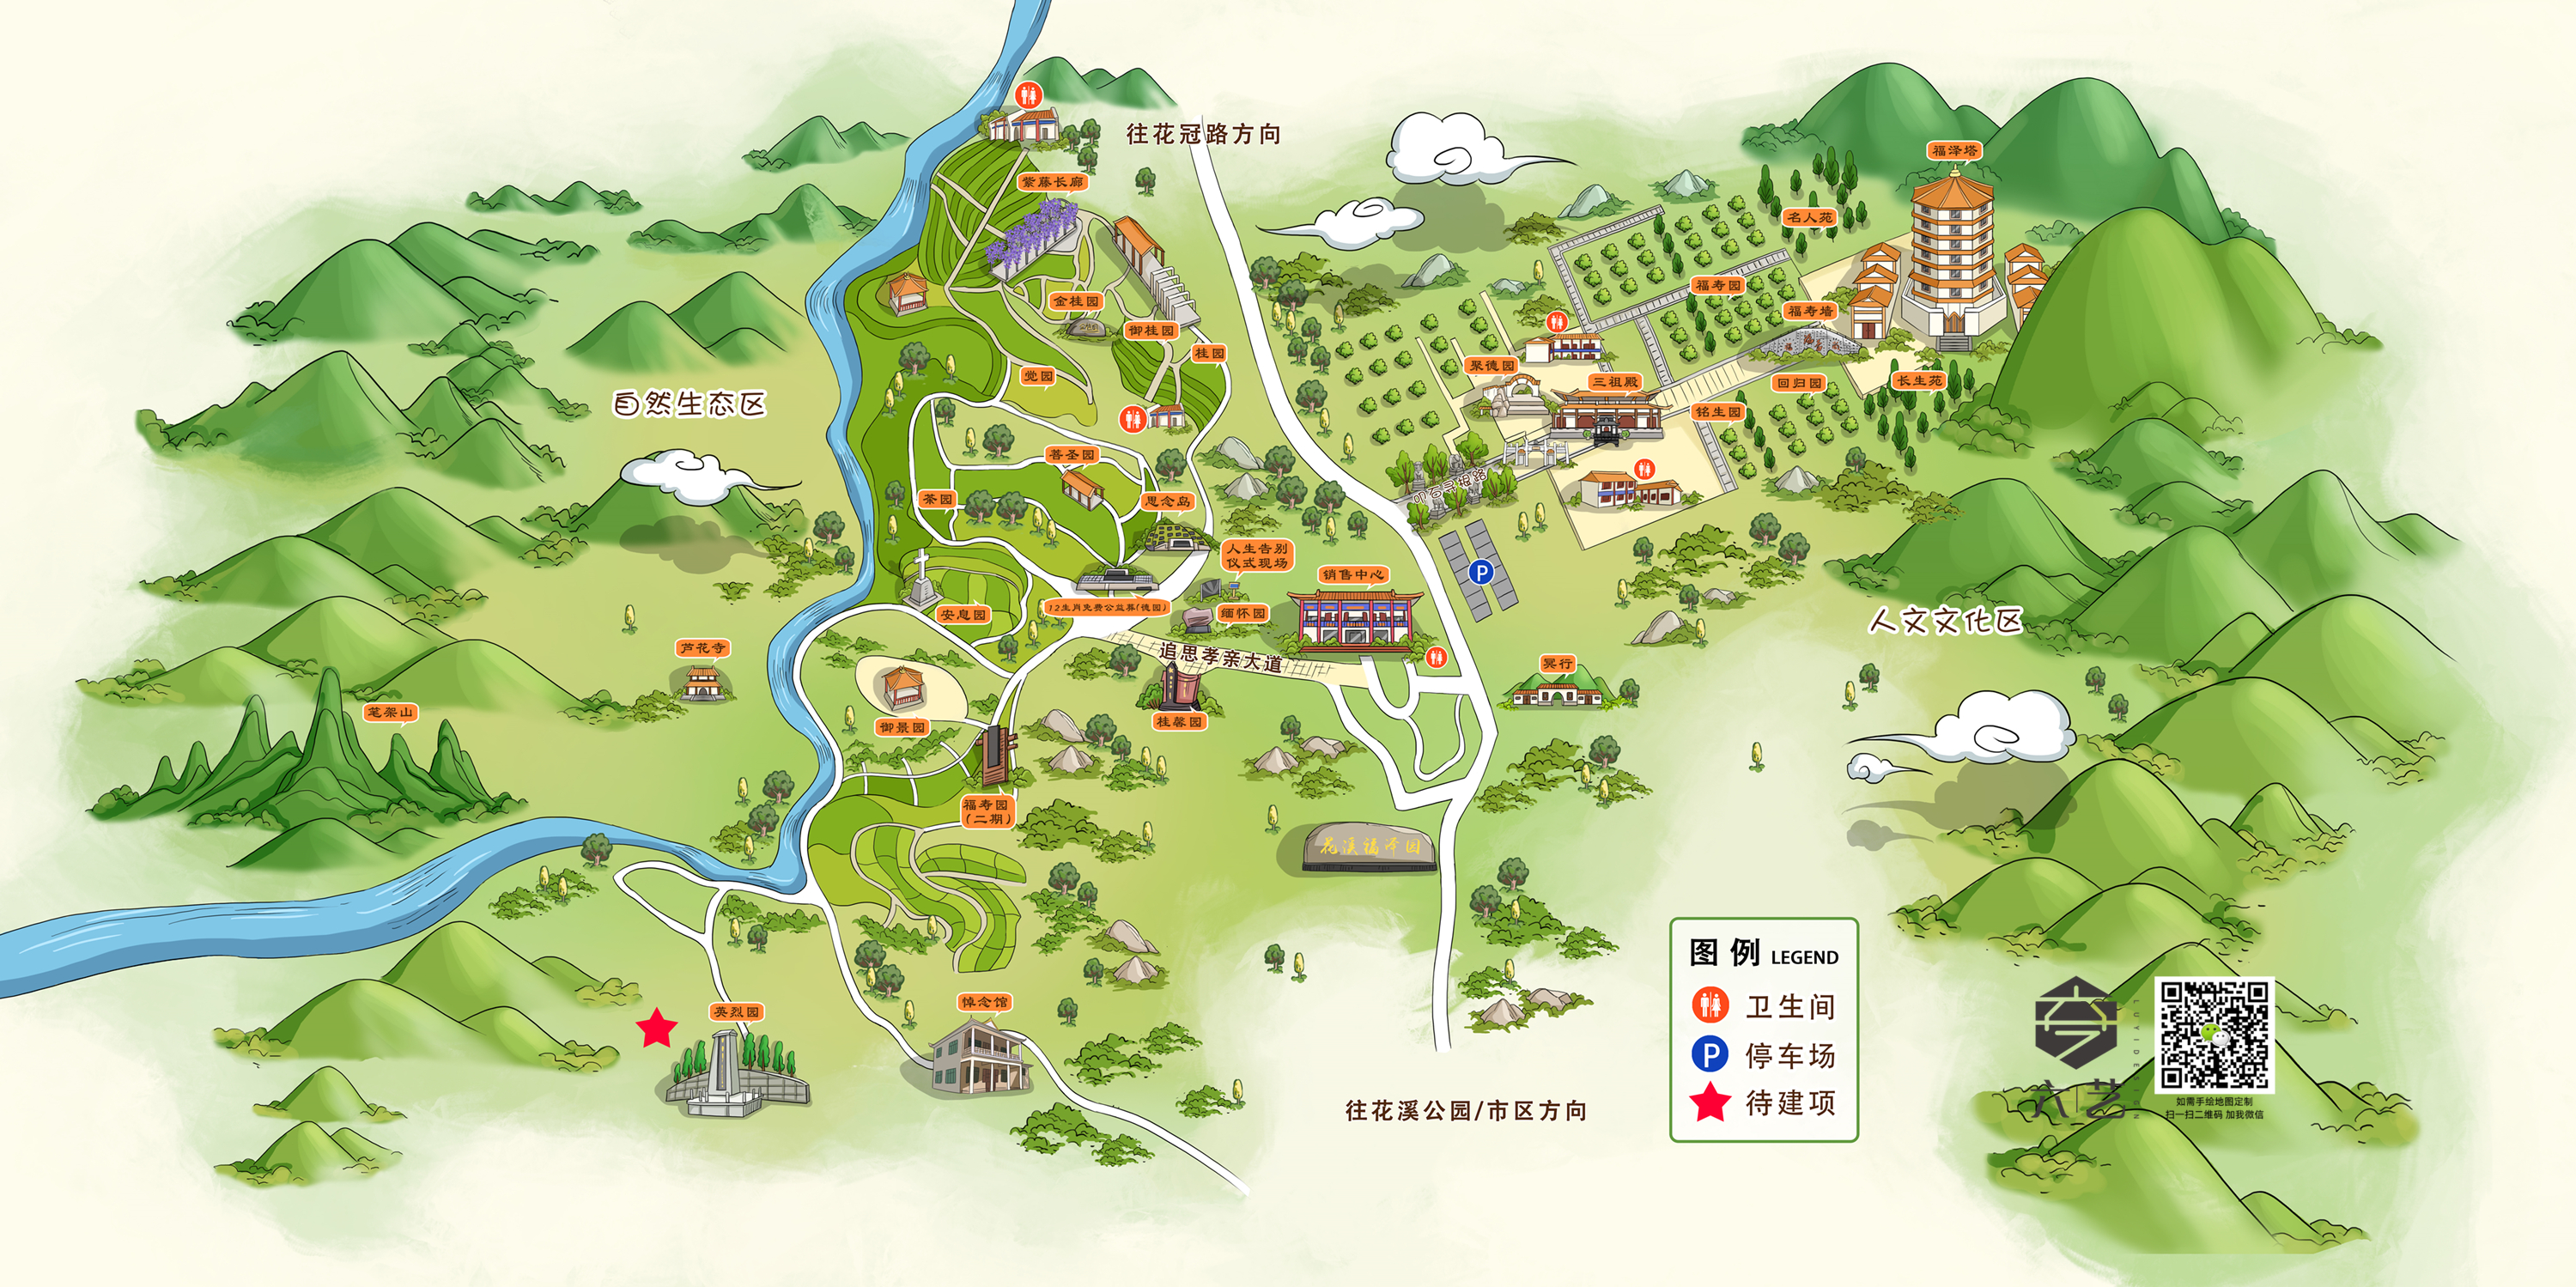 昭通学院地图全景图片